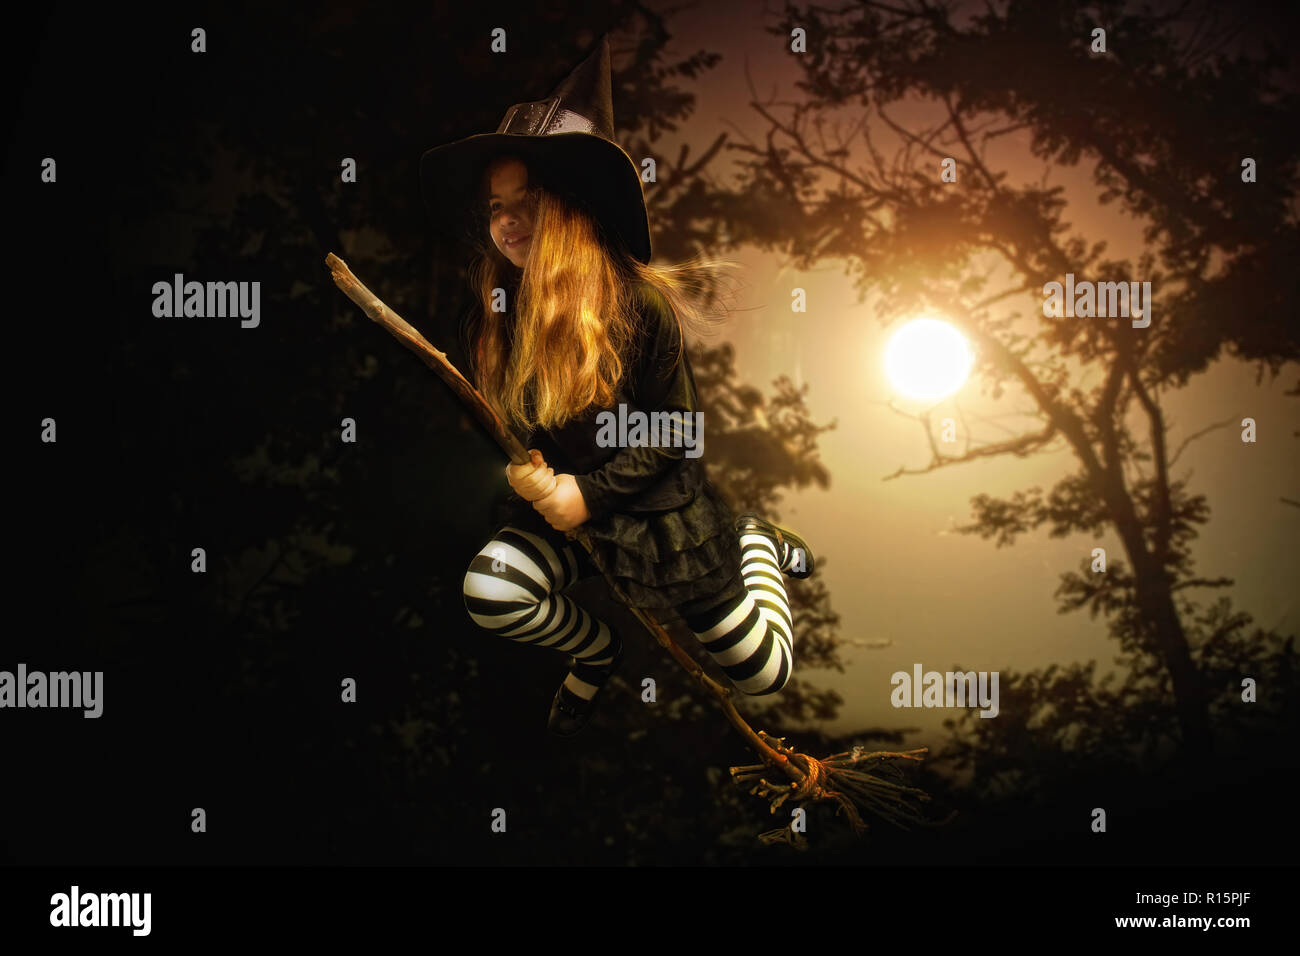 Une petite fille en costume traditionnel d'une sorcière médiévale et un chapeau pointu est voler sur un balai à travers une forêt sombre Banque D'Images